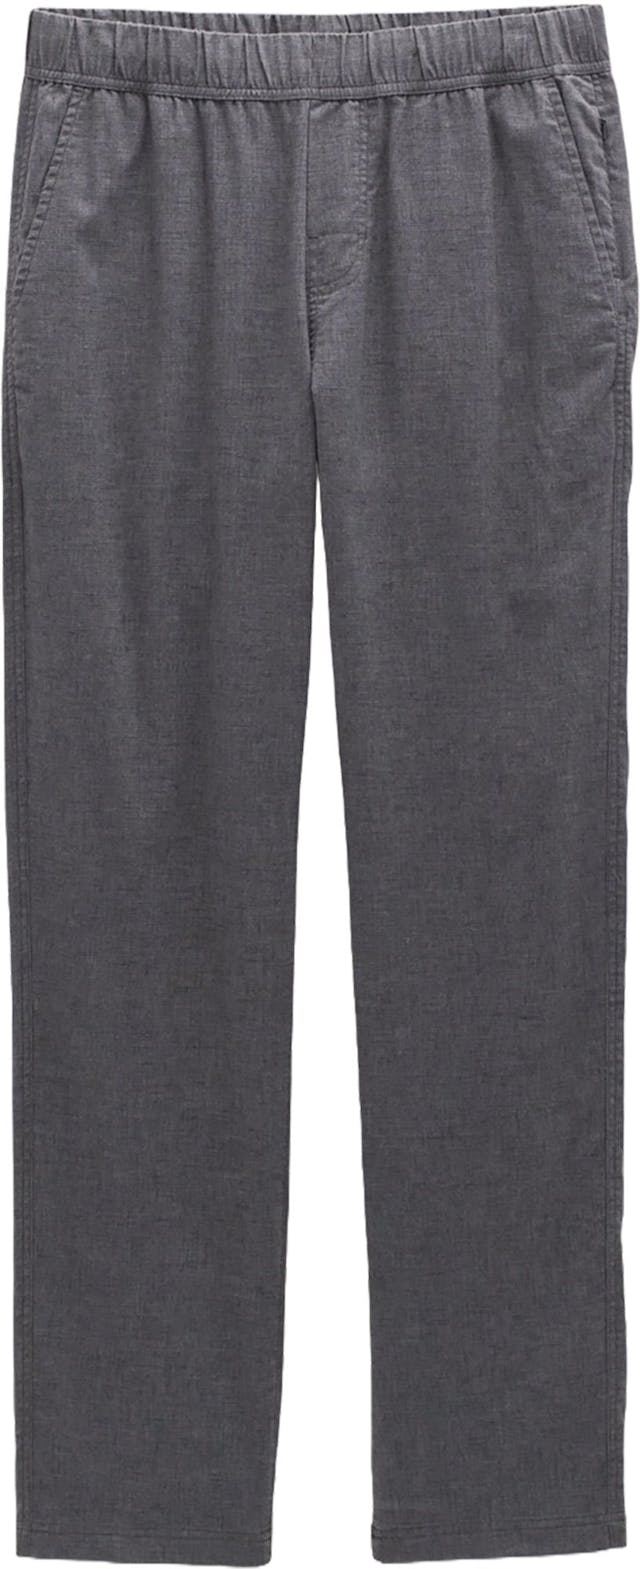 Image de produit pour Pantalon à taille élastique Vaha - Homme